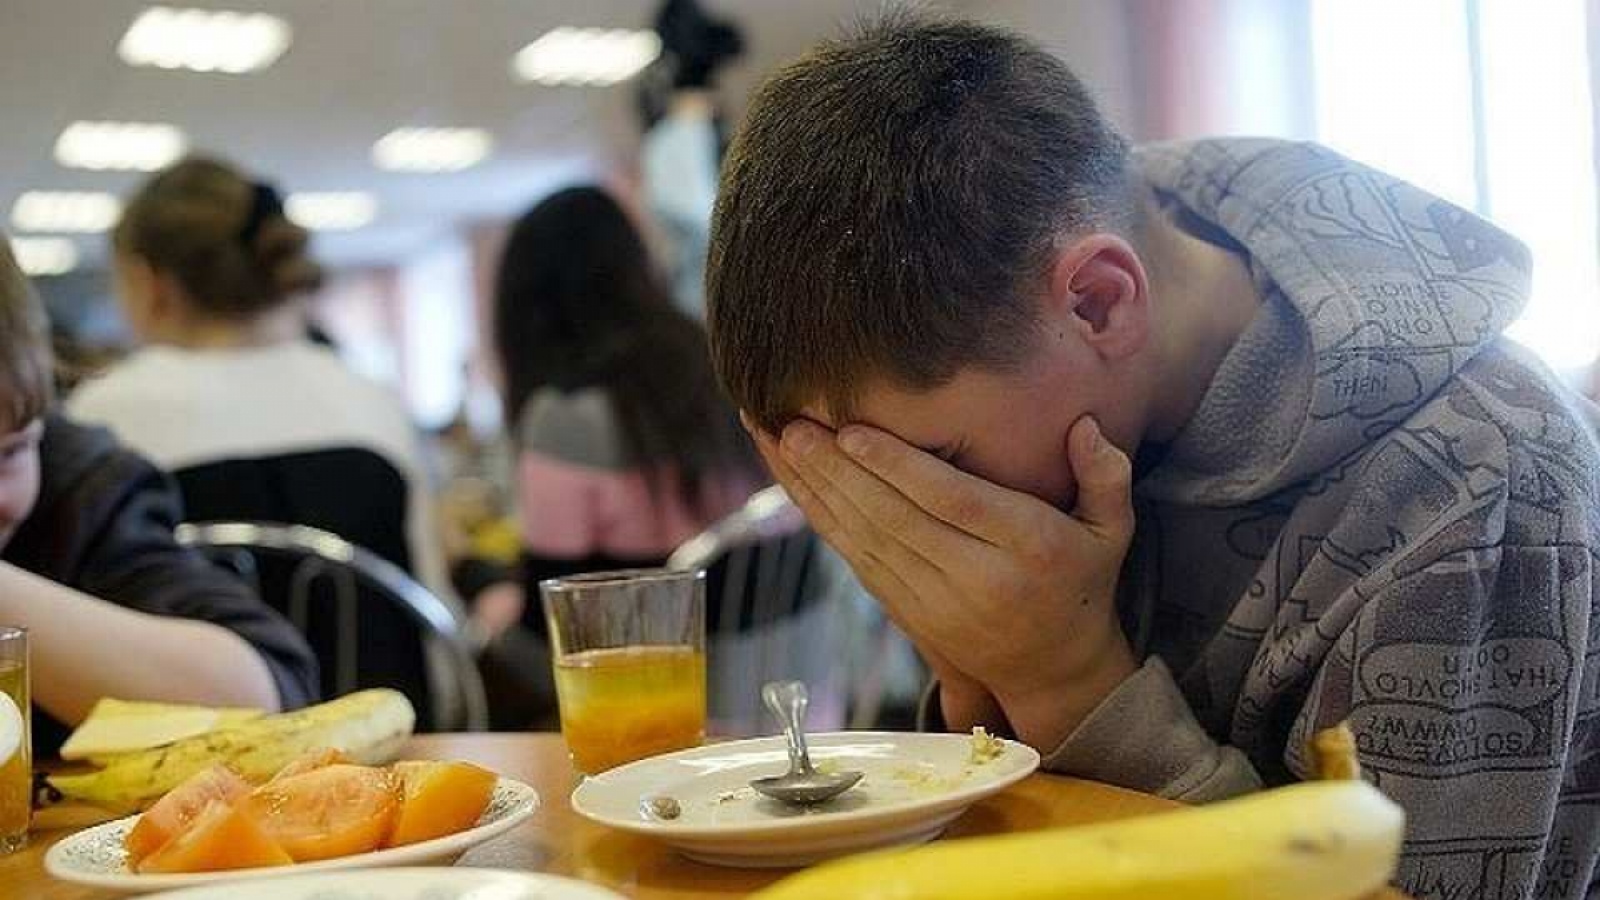 Студентов колледжа кормили опасной едой